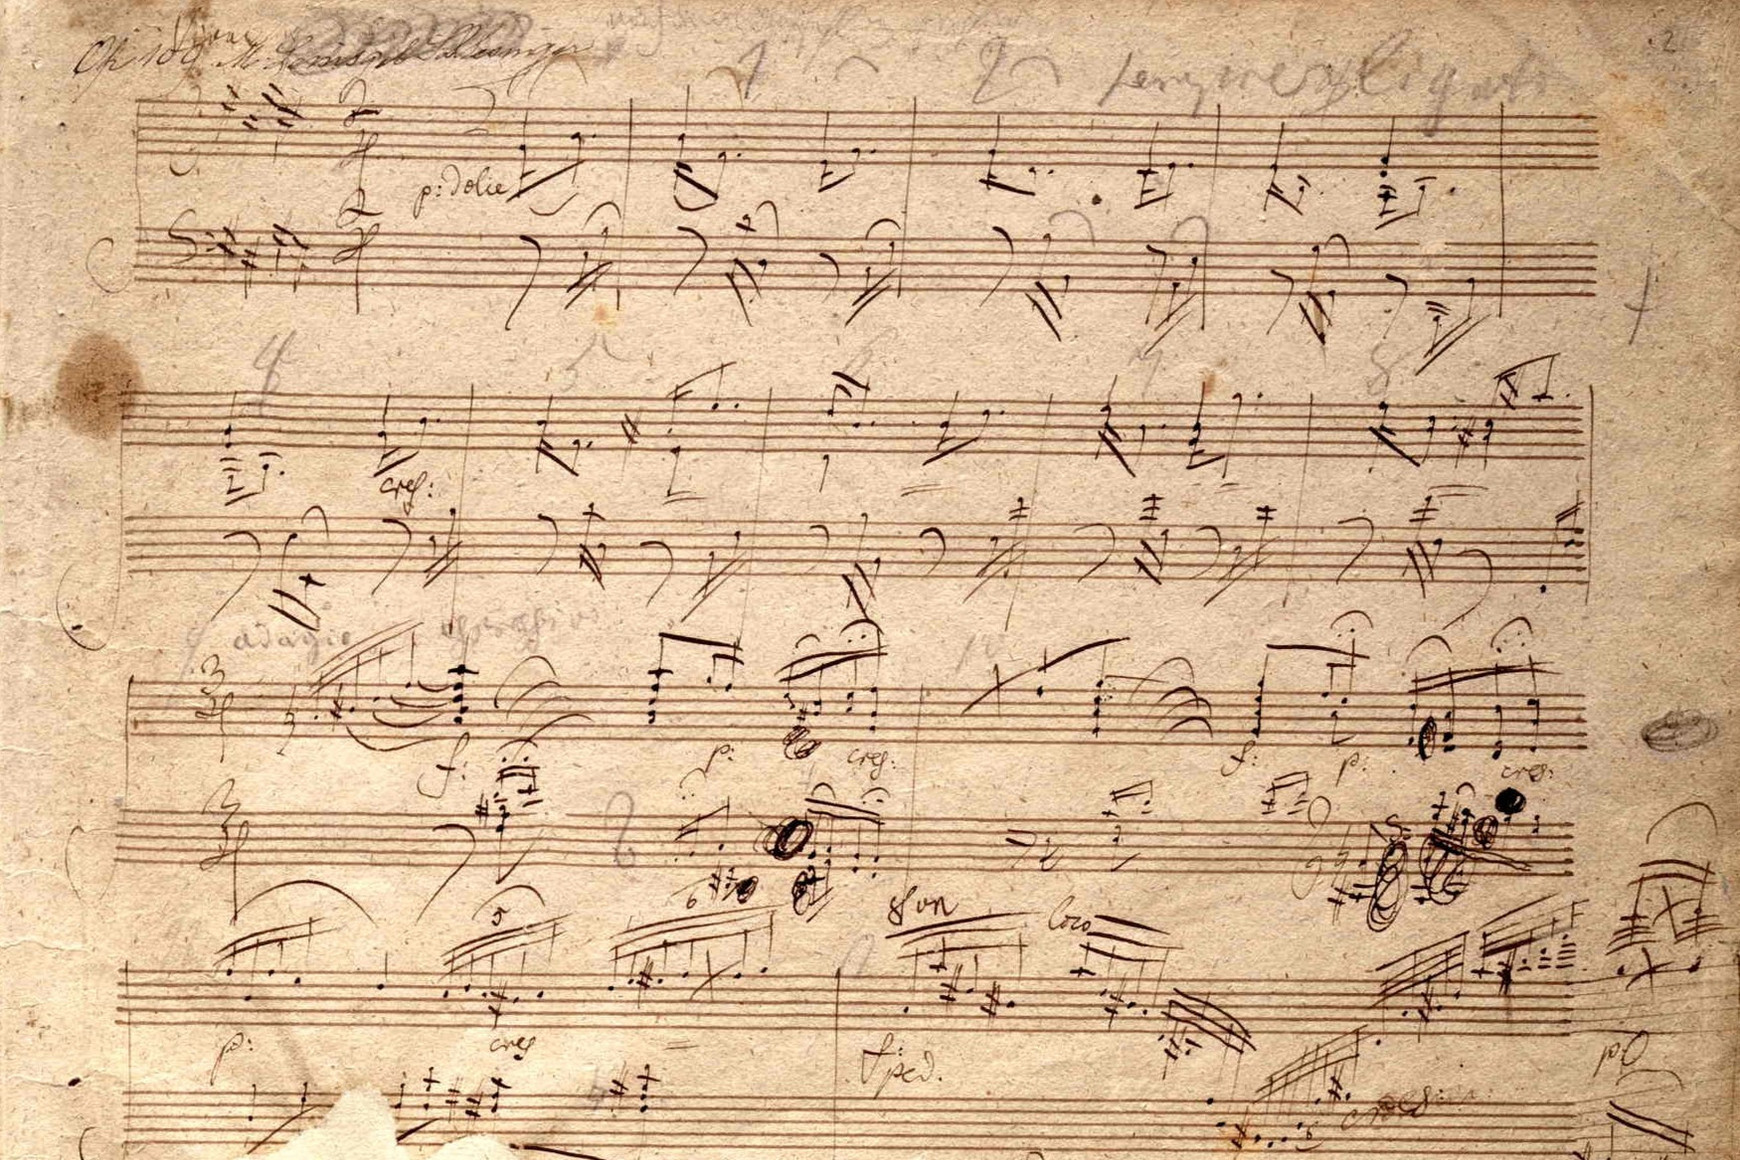 Ludwig van Beethoven et la nécessité du génie - Composer l'Europe #7